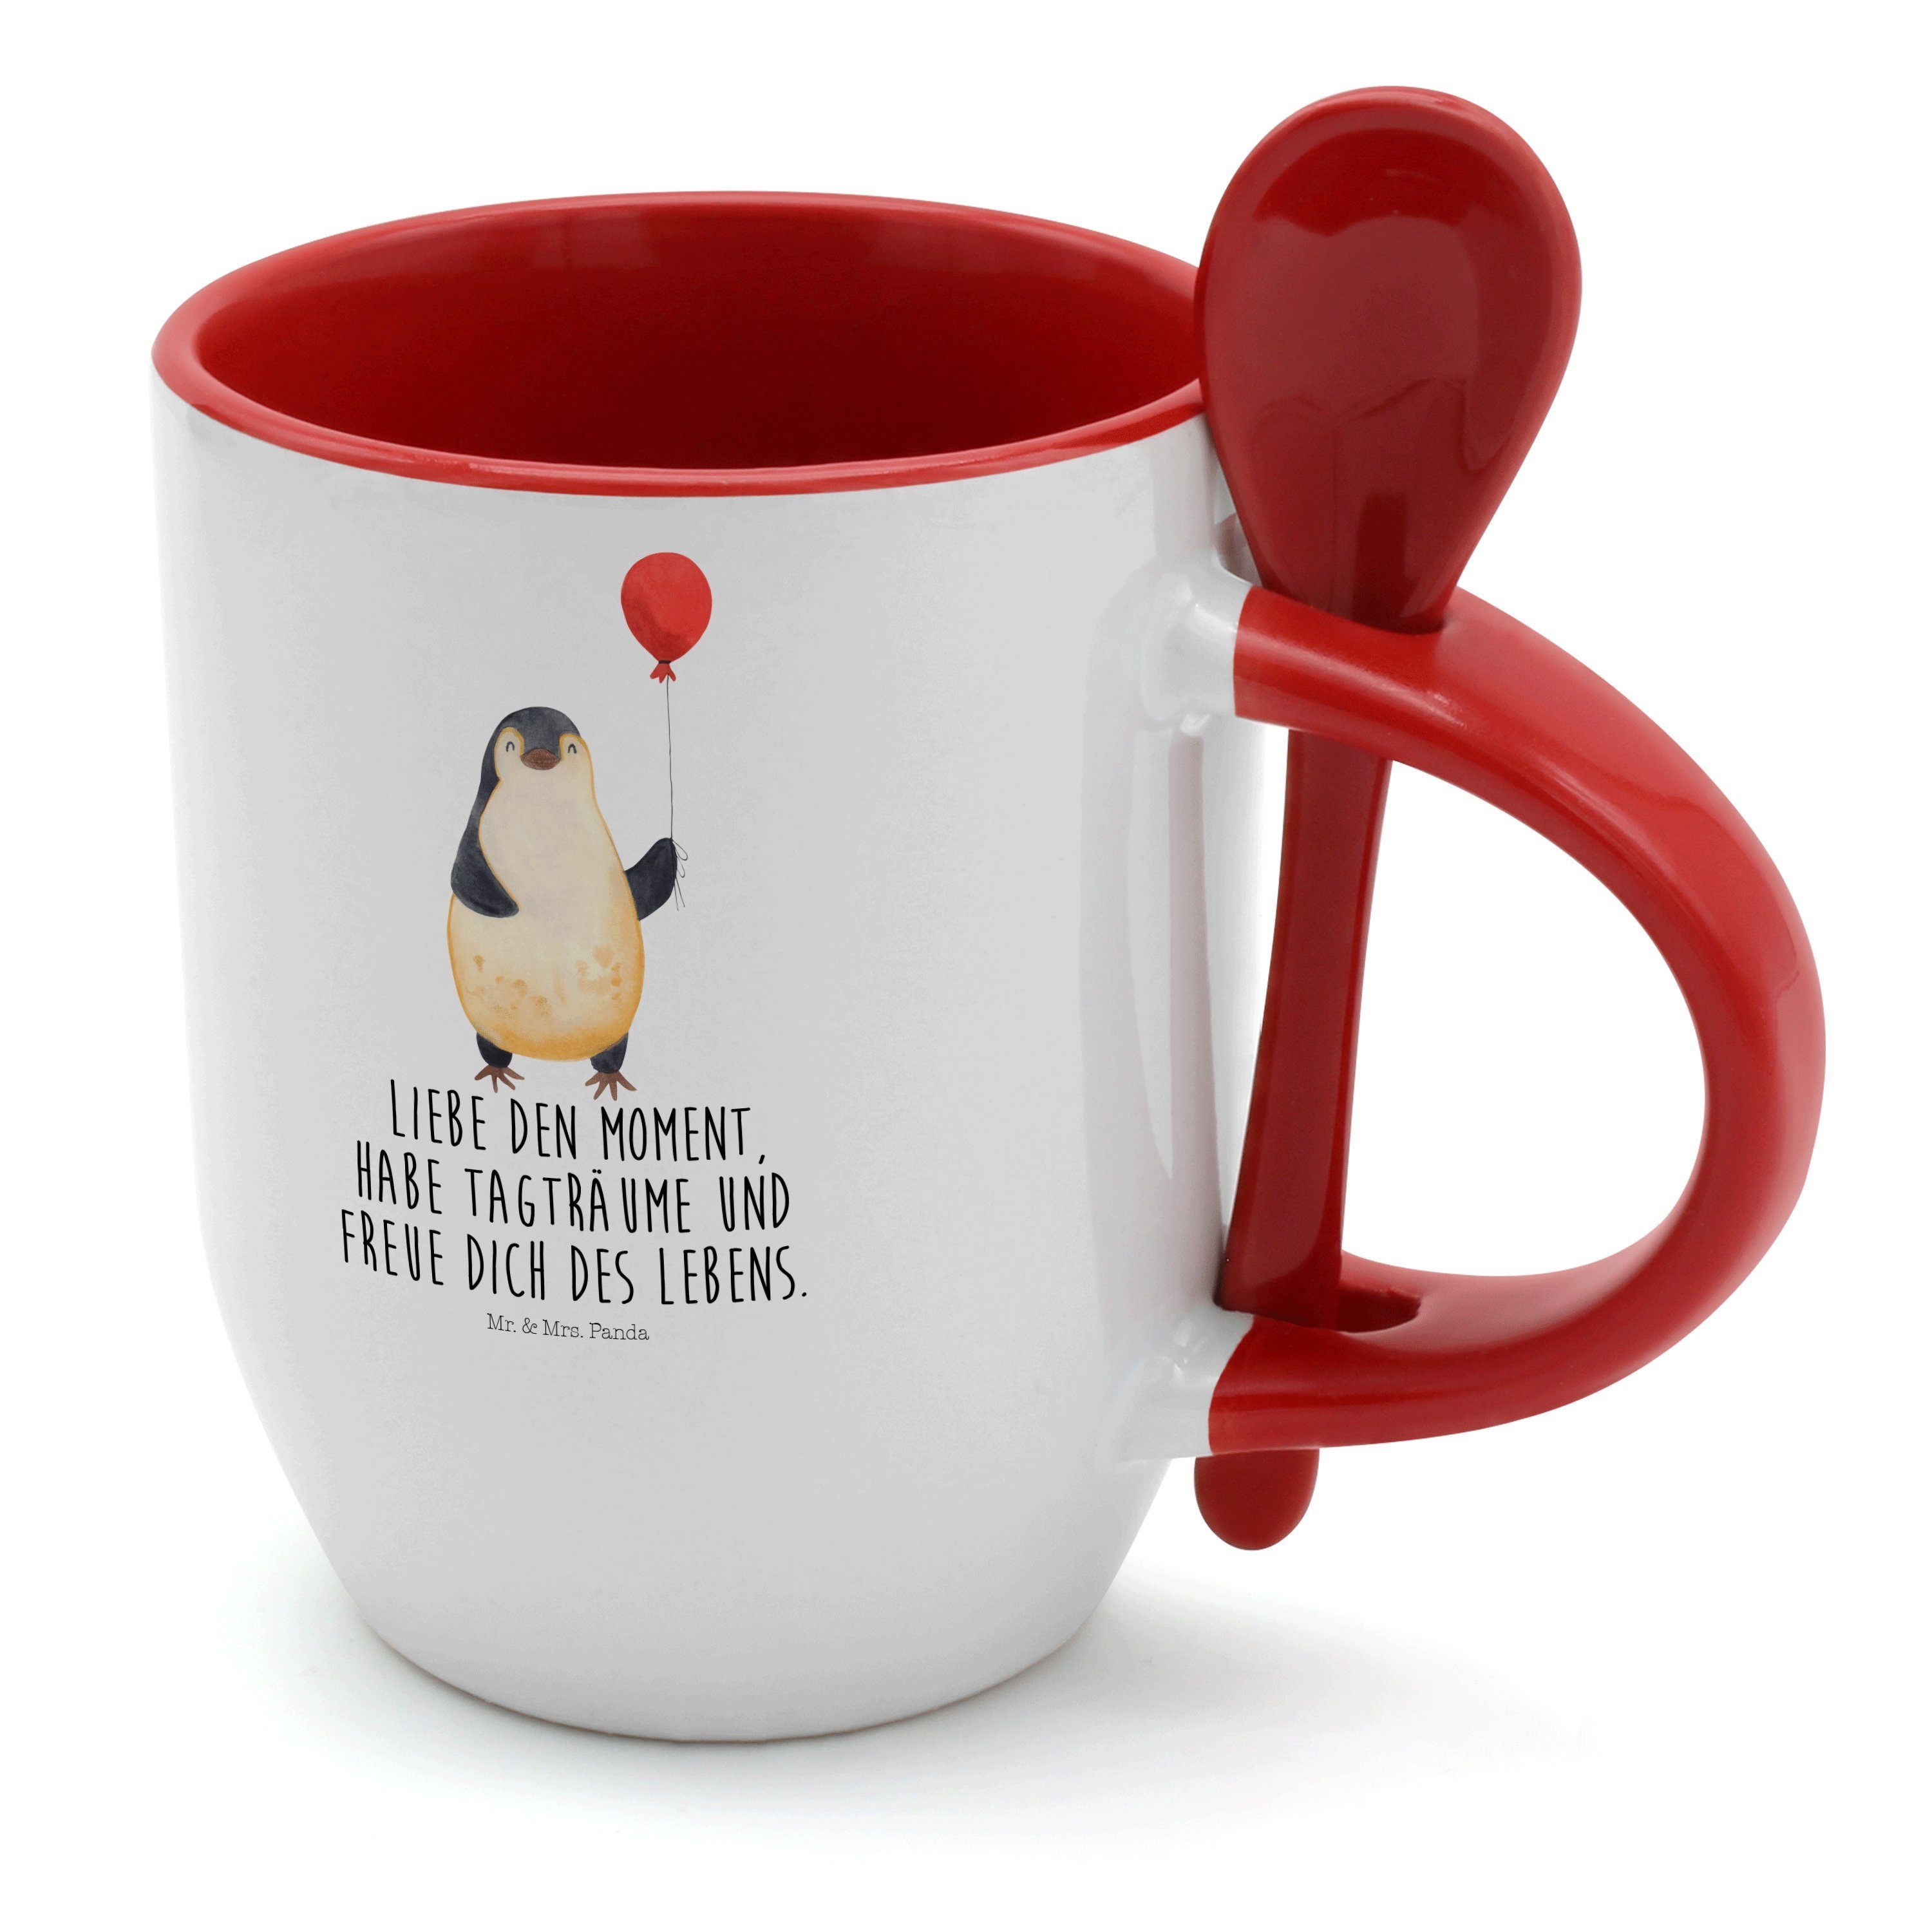 Mr. & Mrs. Panda Tasse Pinguin Luftballon - Weiß - Geschenk, Glück, Jahrmarkt, Geschenkidee, Keramik